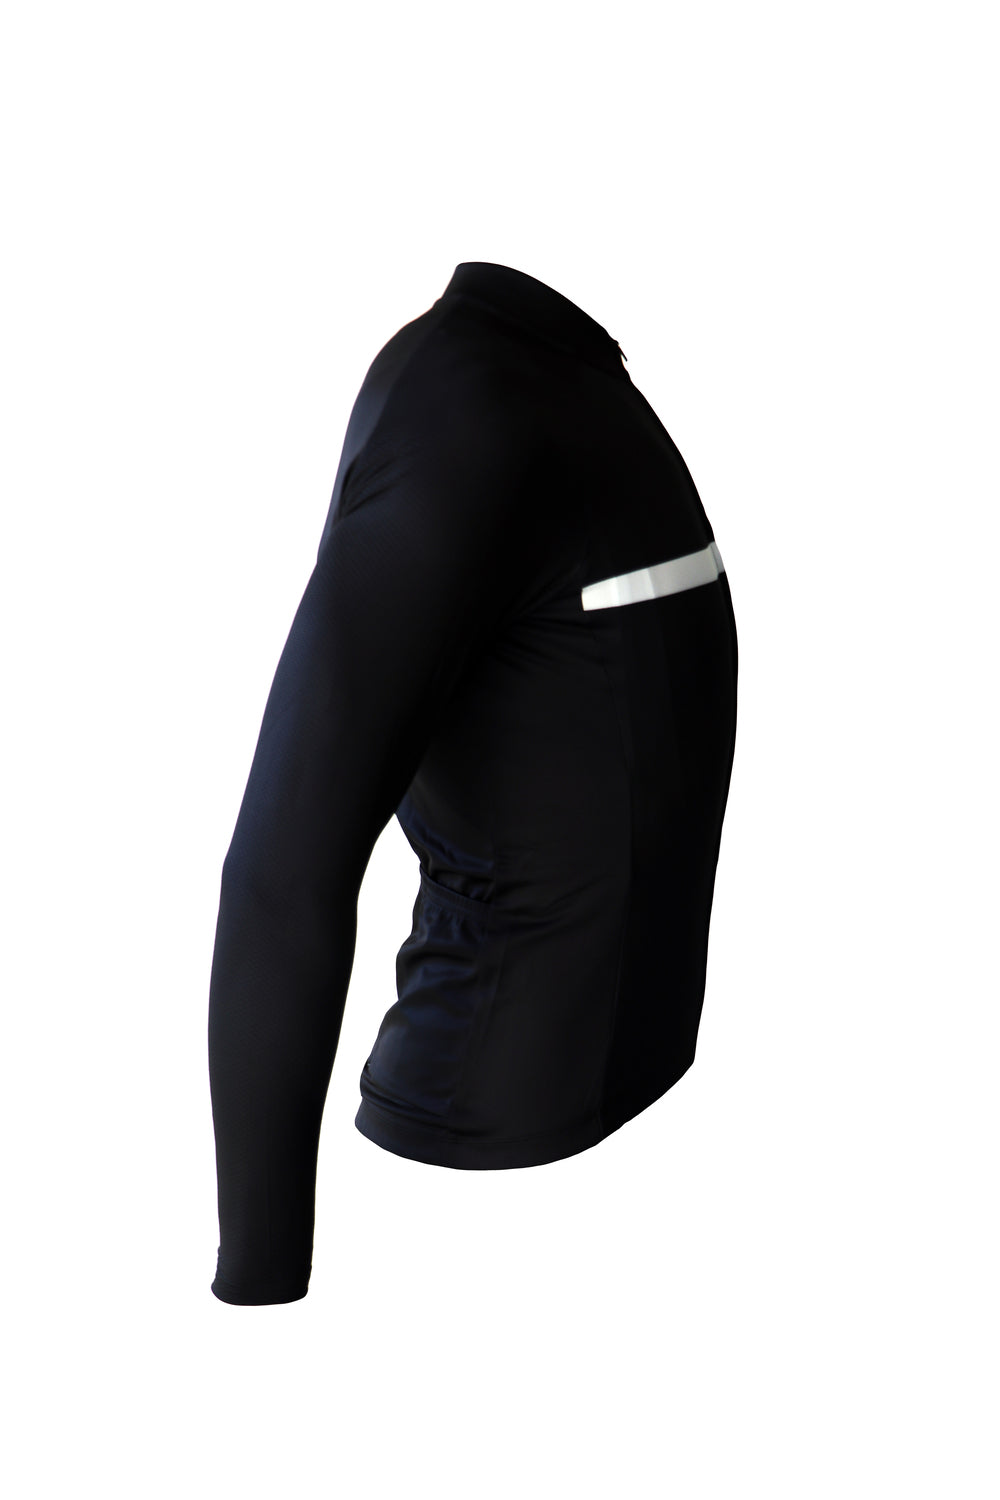 Bici textil-Jersey largo con ejercicio, blanco y negro